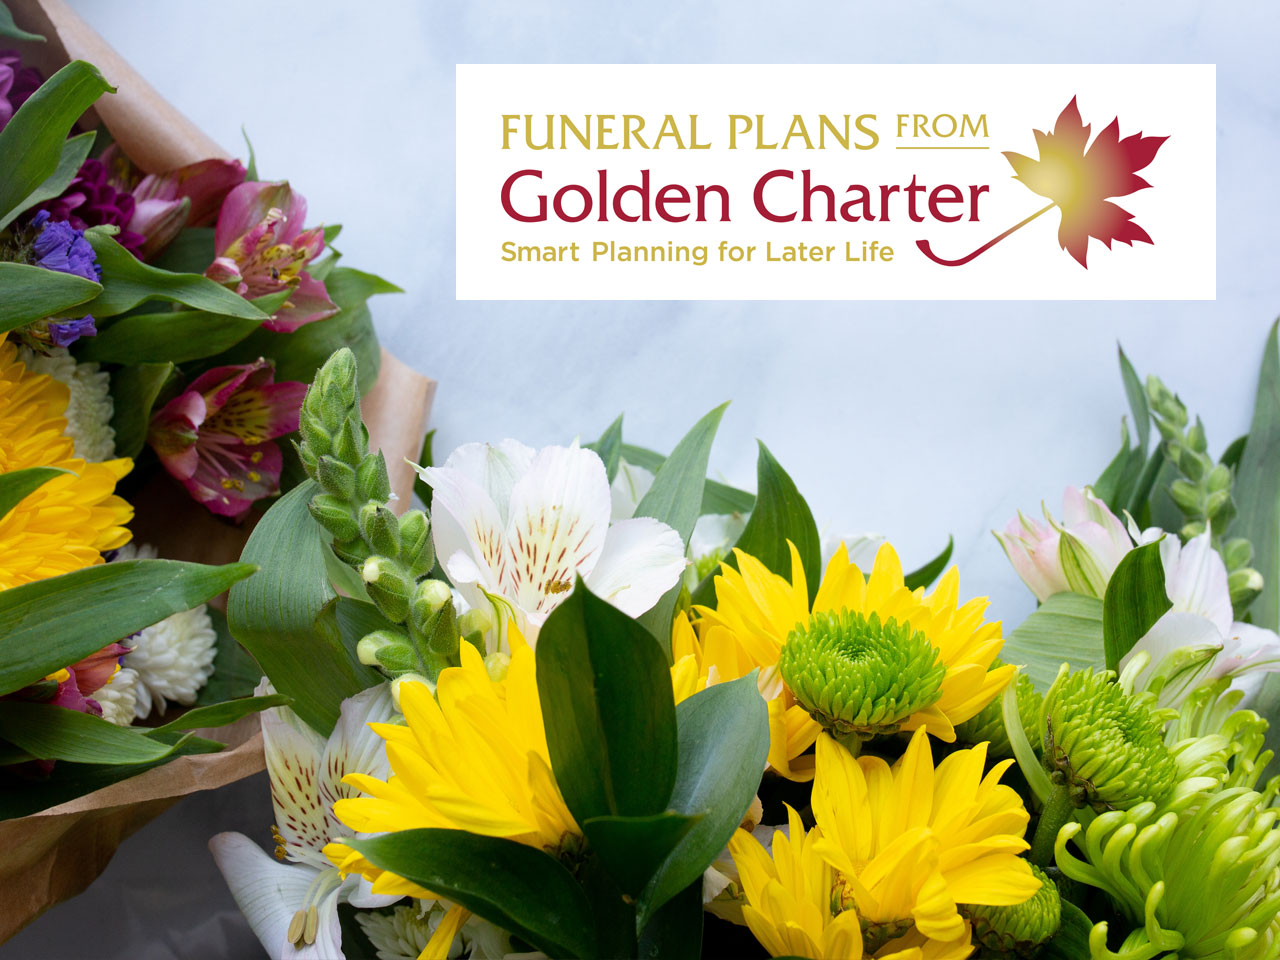 Golden Charter Funeral Plans